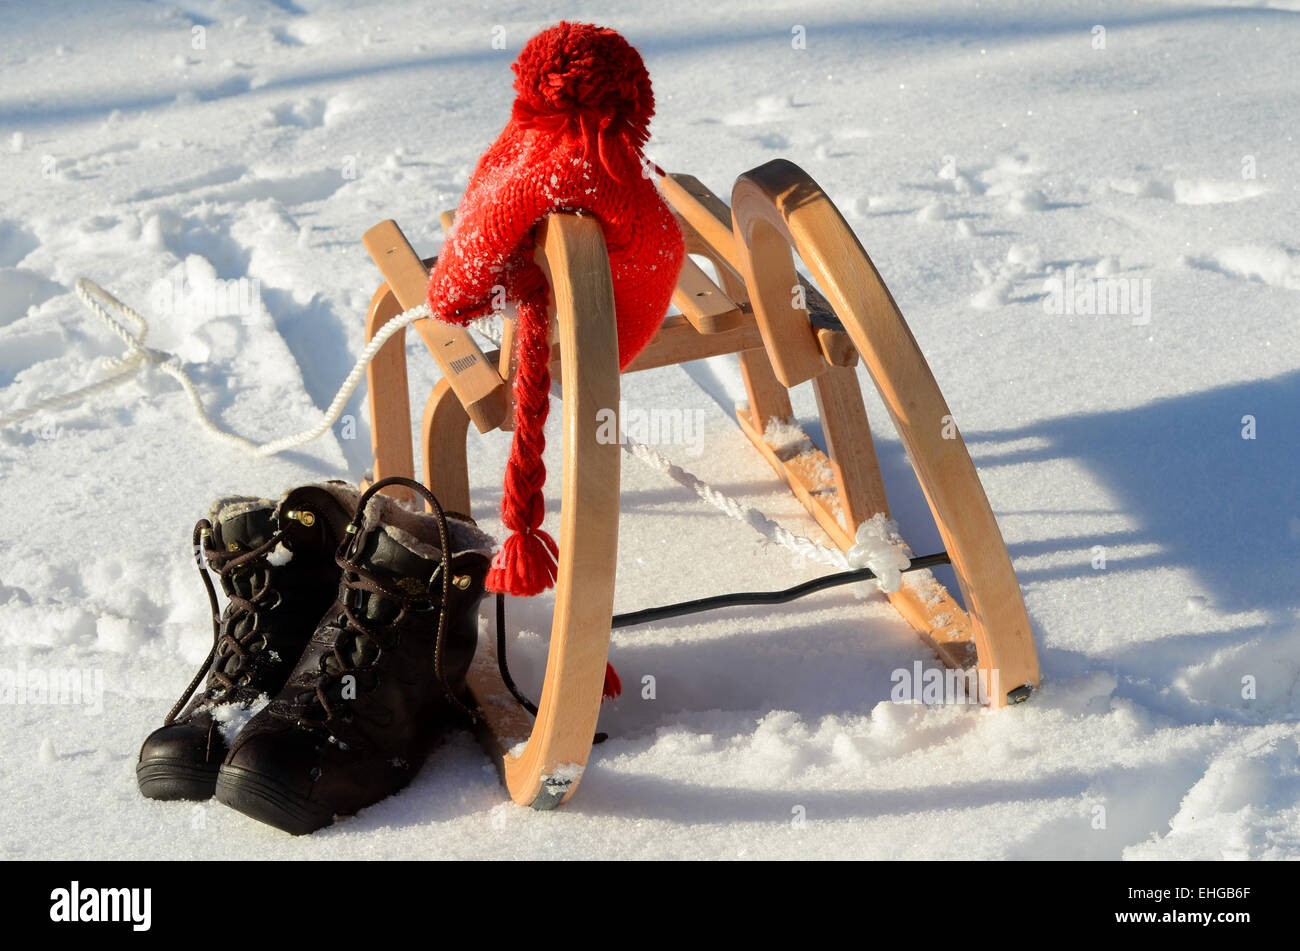 Jan Eichhorn, Rodler Feature mit Rennschlitten, Wintersport, Rodeln Stock  Photo - Alamy